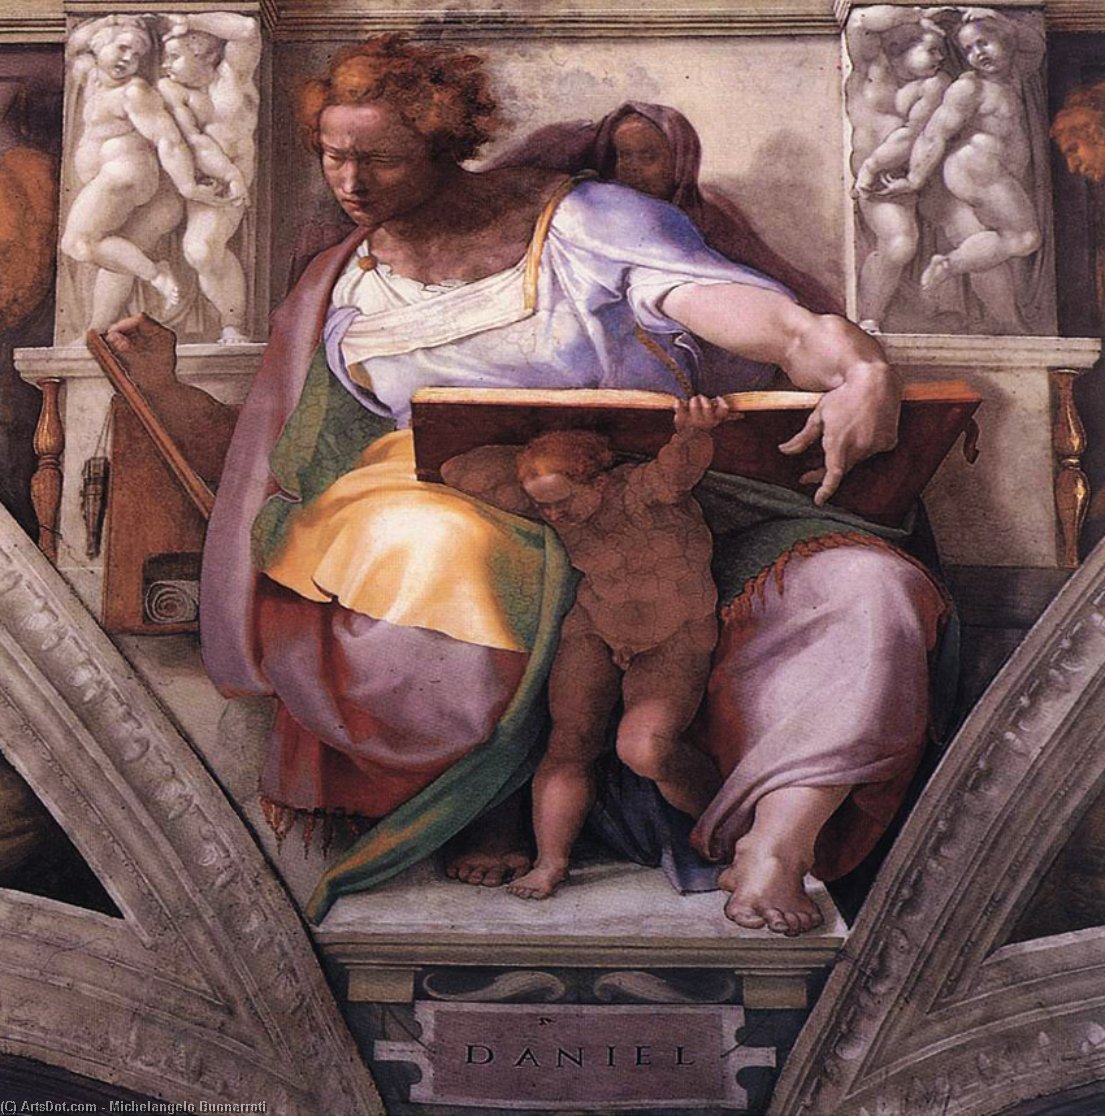 WikiOO.org - Encyclopedia of Fine Arts - Lukisan, Artwork Michelangelo Buonarroti - Daniel